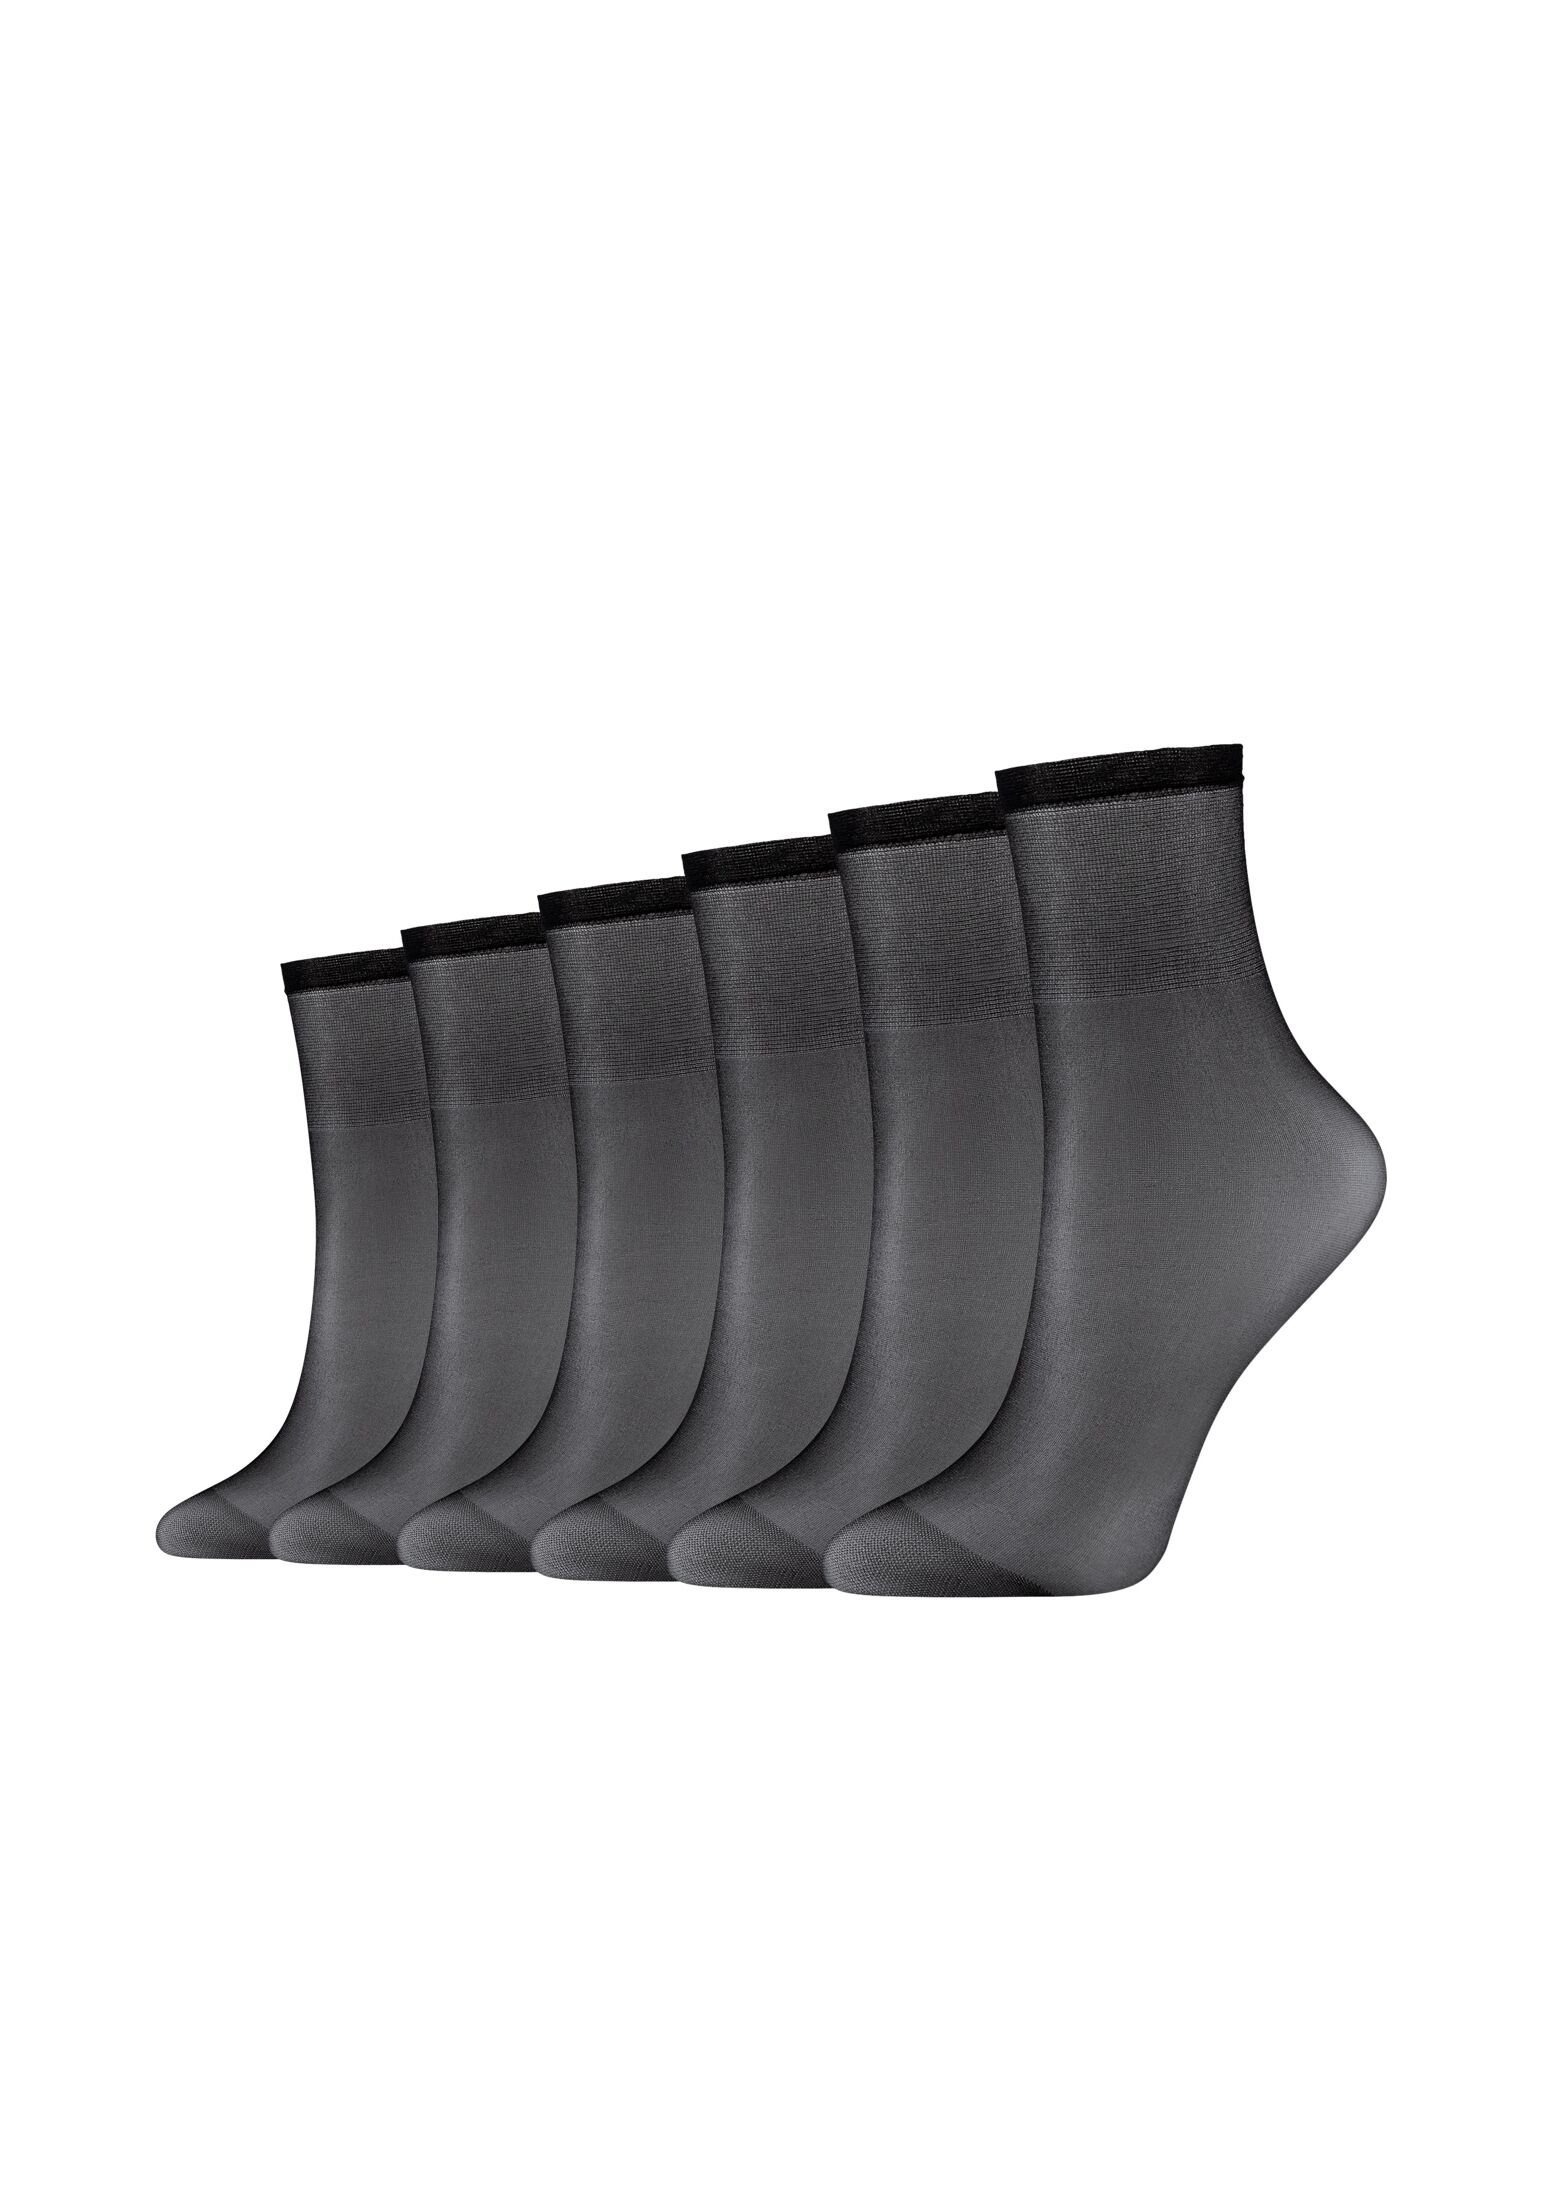 Camano Socken Socken 6er – Transparenter, Look seidig-matter Pack, vielseitig kombinierbar